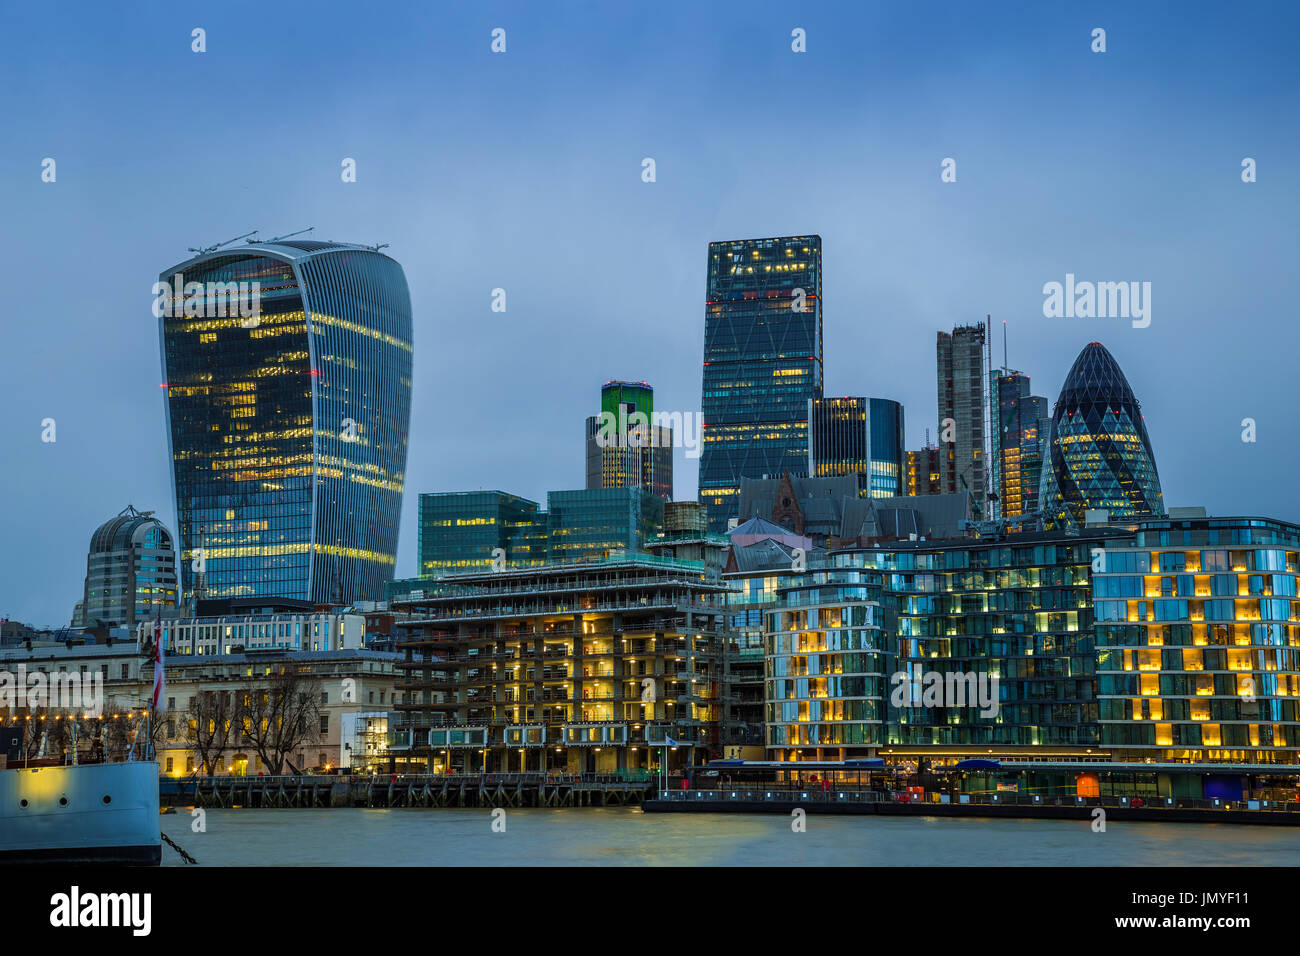 Londra, Inghilterra - Banca, il famoso quartiere degli affari di Londra con grattacieli e cielo blu al tramonto Foto Stock